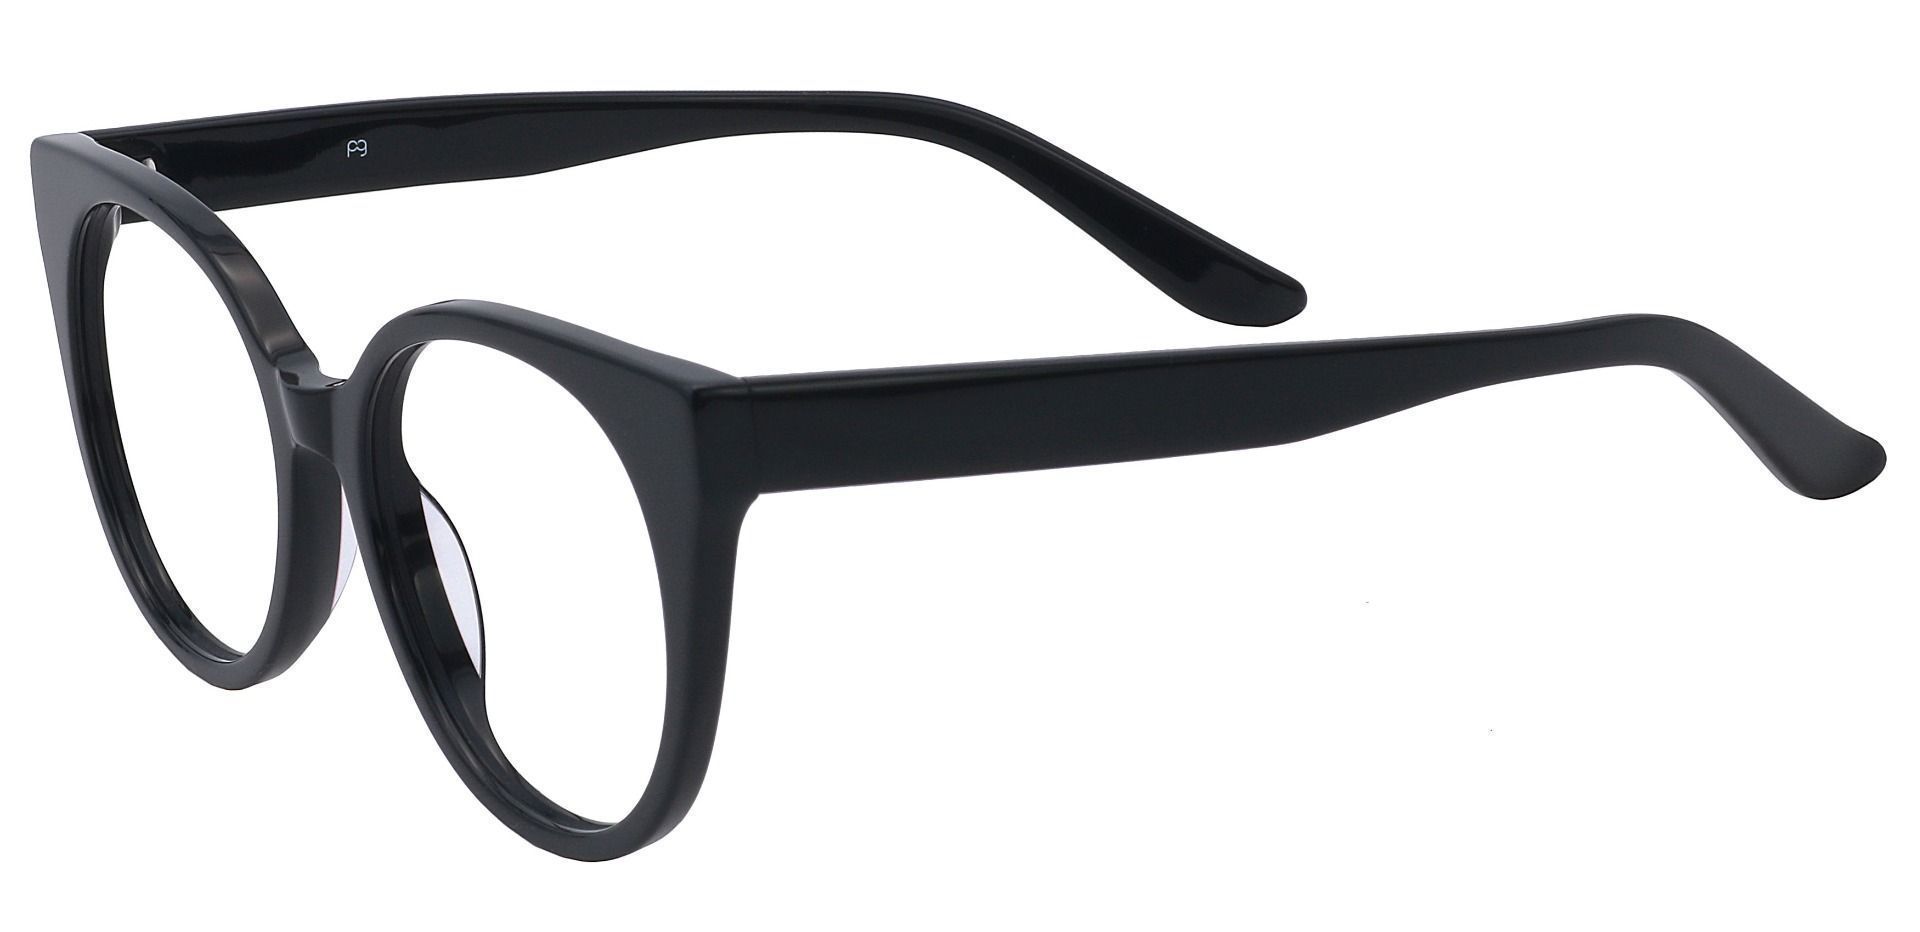 Balmoral Cat-Eye Prescription Glasses - Black